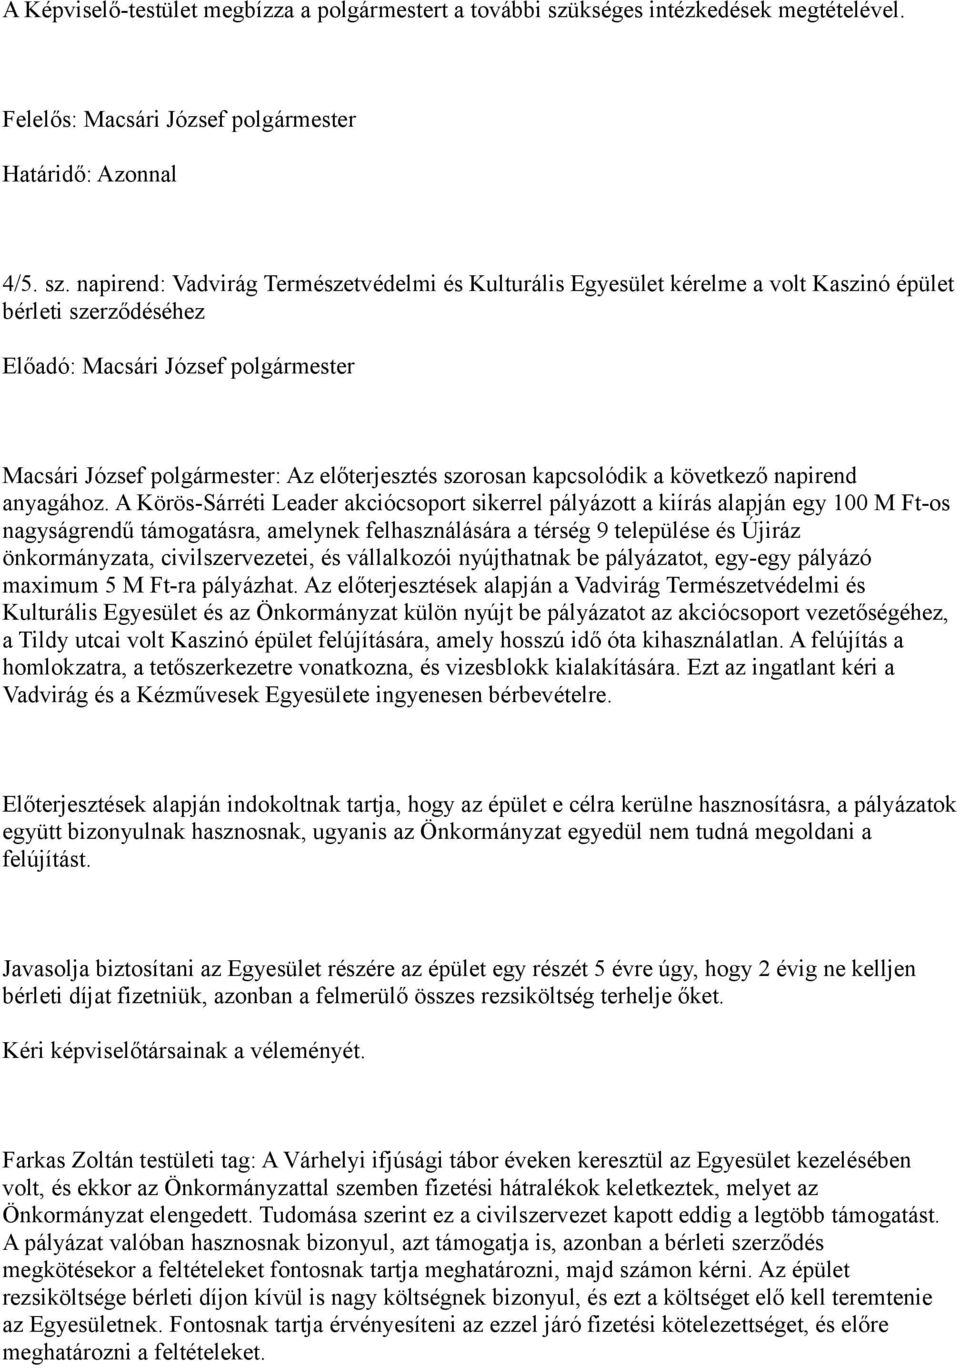 napirend: Vadvirág Természetvédelmi és Kulturális Egyesület kérelme a volt Kaszinó épület bérleti szerződéséhez Macsári József polgármester: Az előterjesztés szorosan kapcsolódik a következő napirend